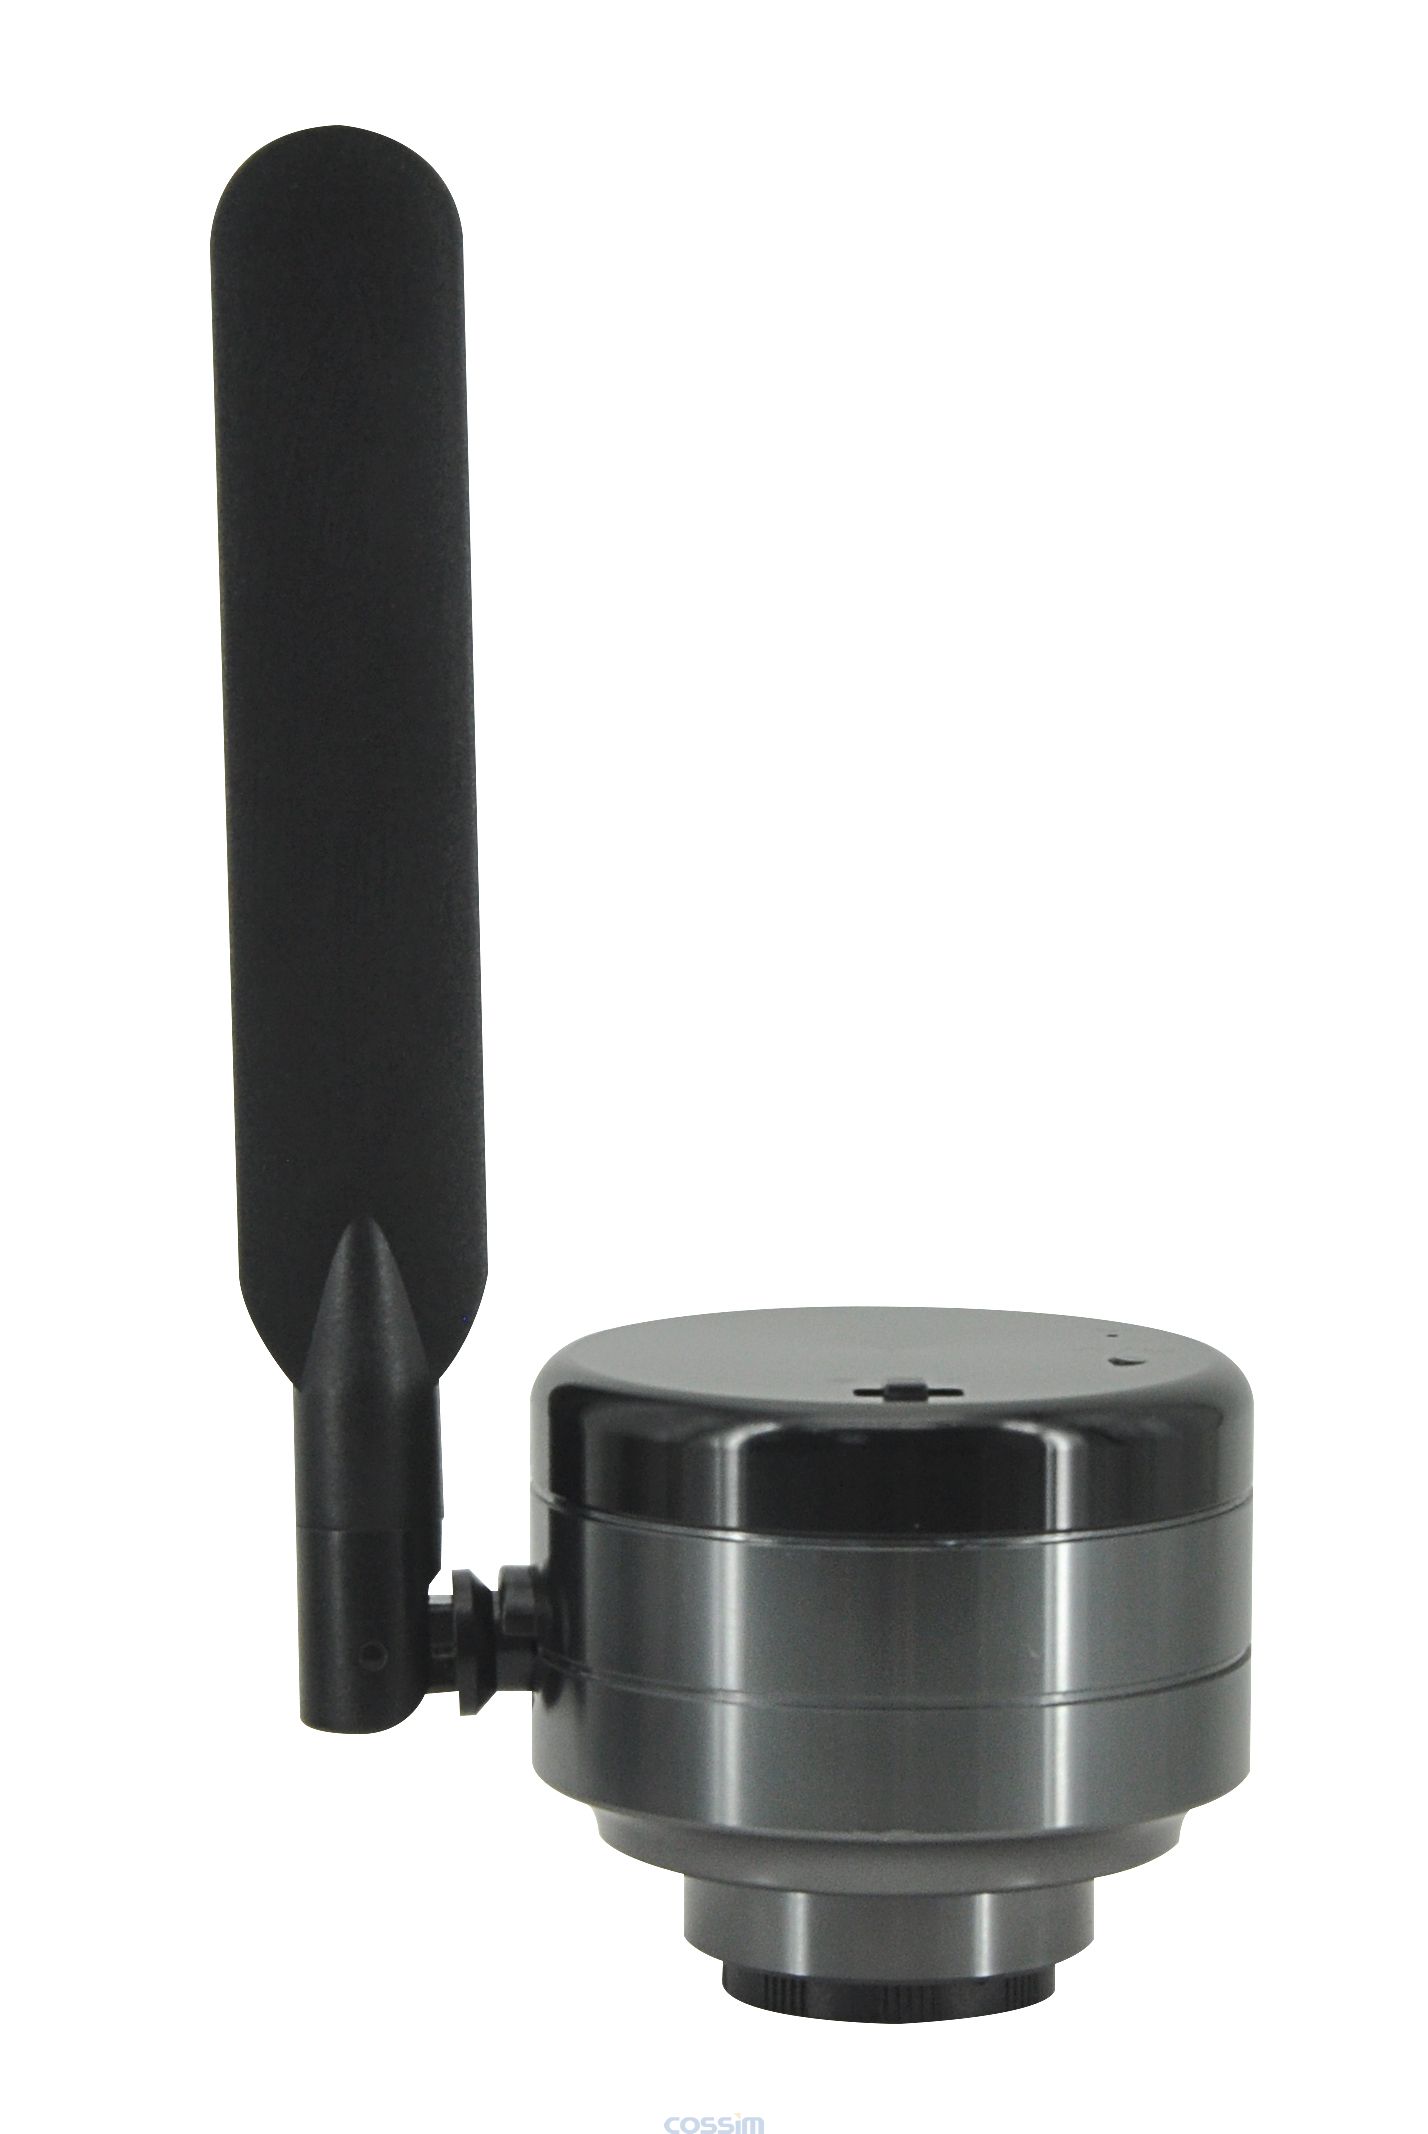 显微镜用数码相机MC4KW-G1 显微成像系统